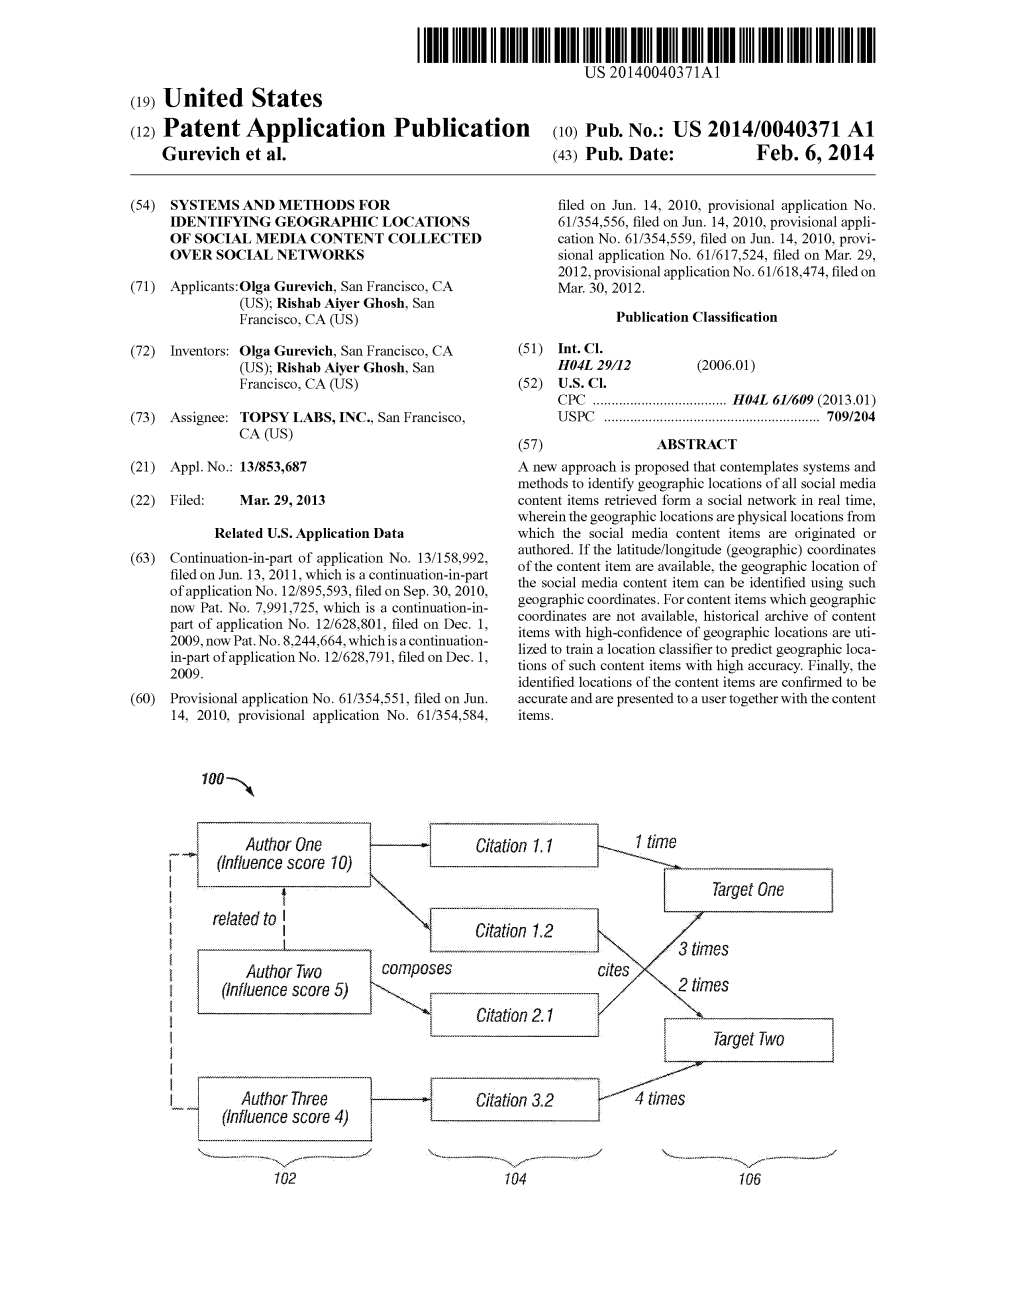 Patent Application Publication (10) Pub. No.: US 2014/0040371 A1 Gurevich Et Al